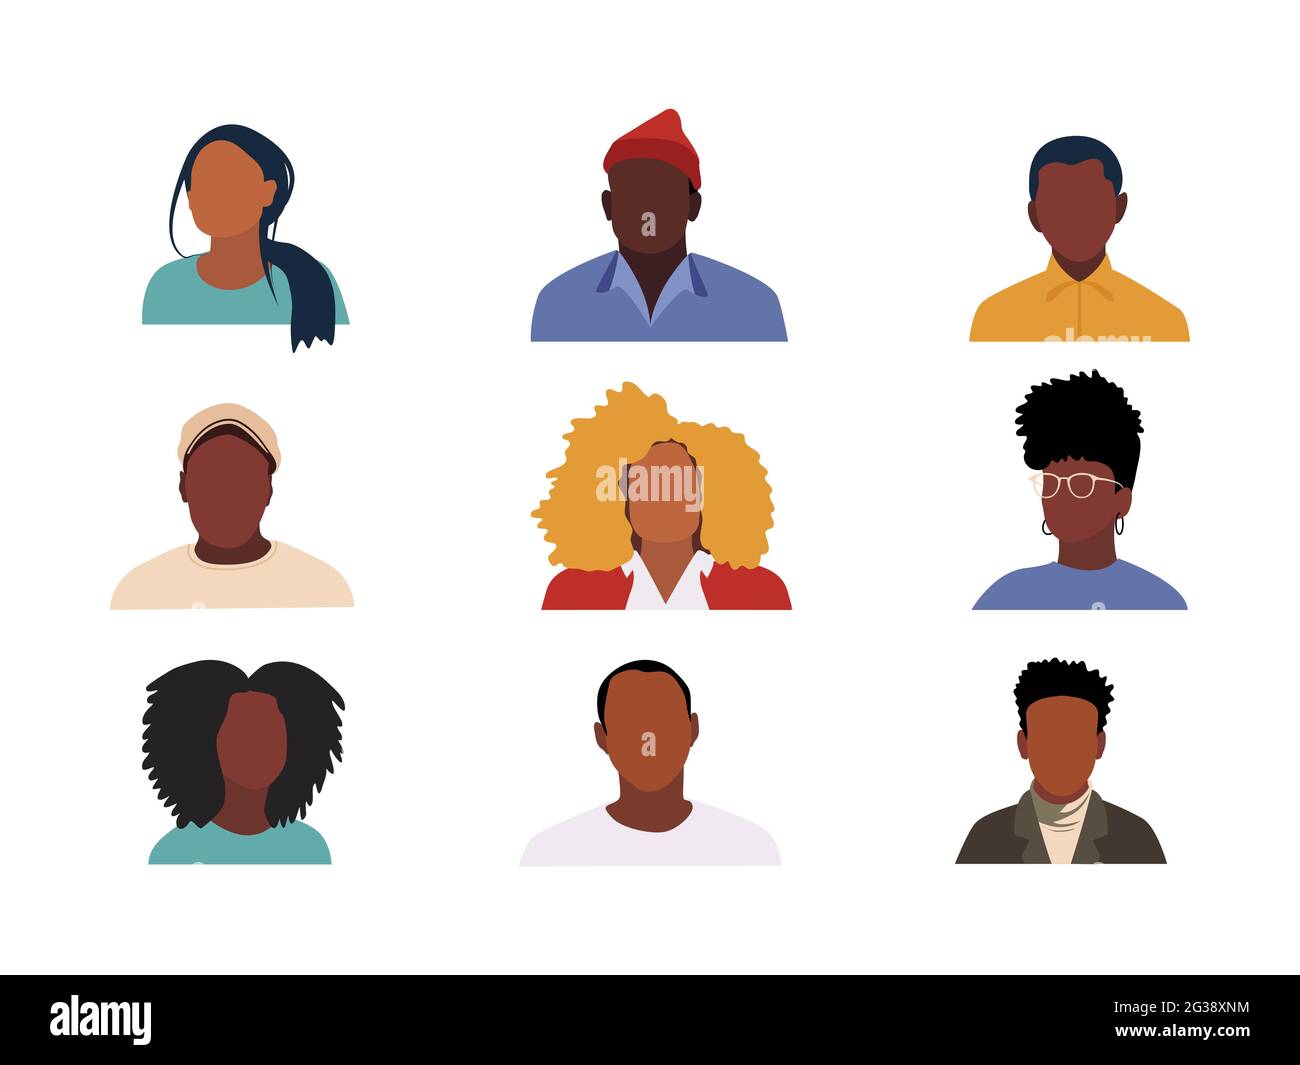 Portraits de peuples afro-américains. Ensemble d'icônes de réseaux sociaux. Svatars à conception plate. Femme et homme élégants et modernes. Vecteur. Illustration de Vecteur